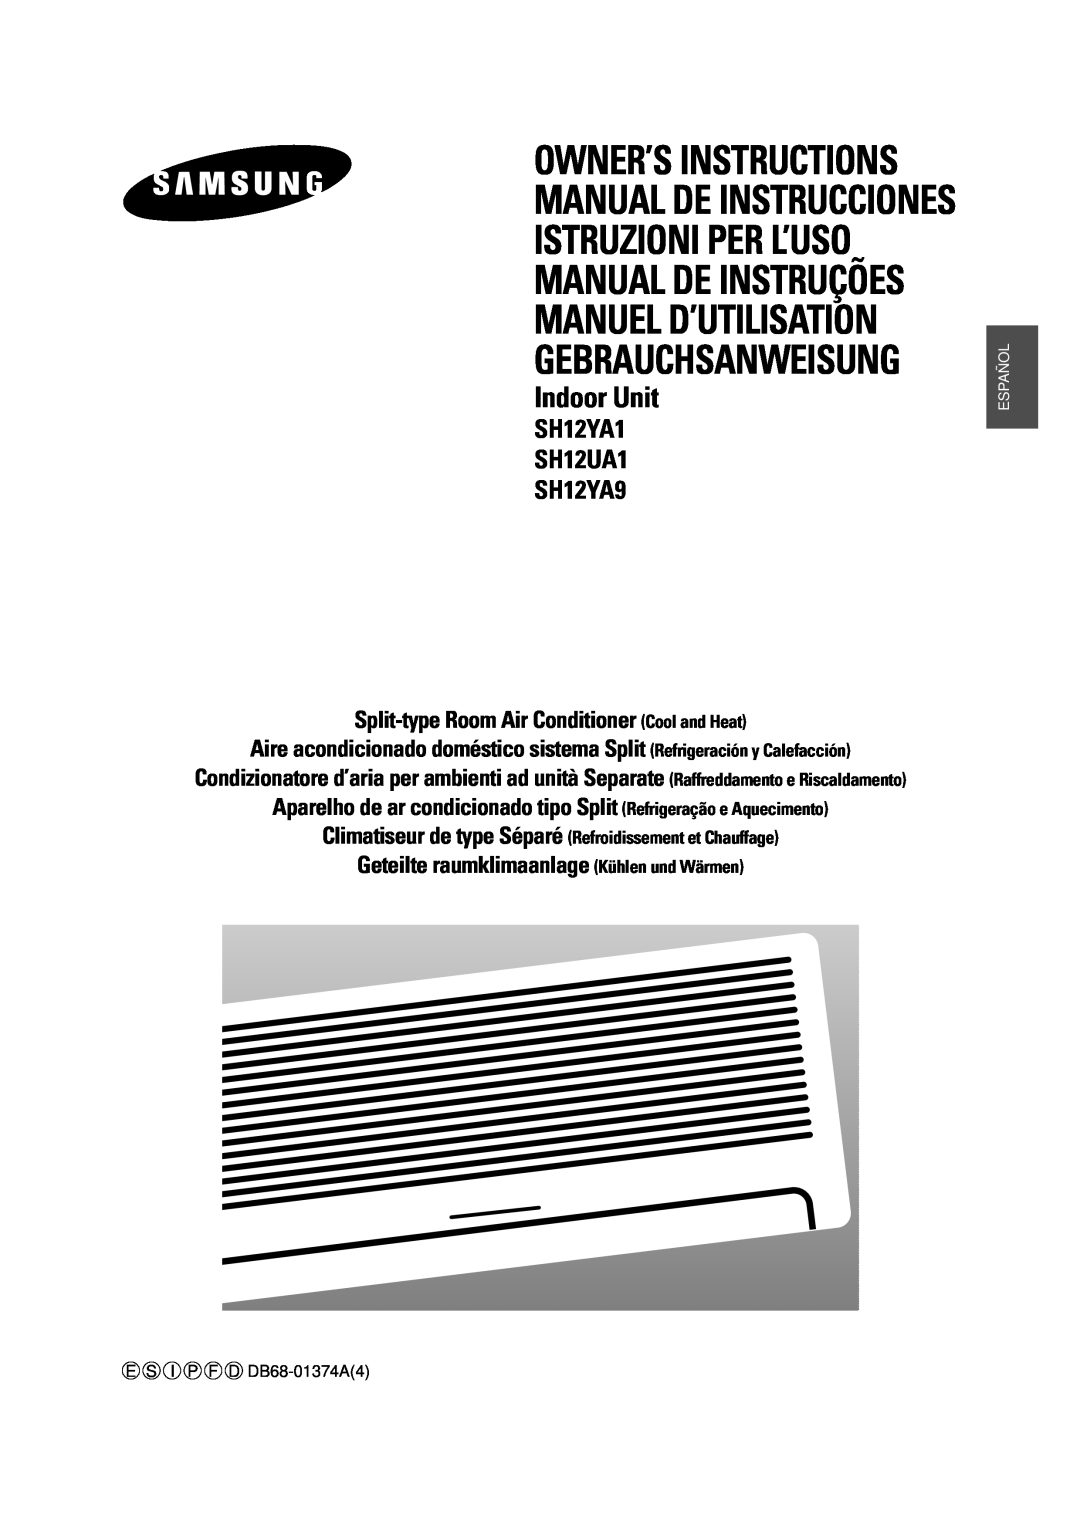 Samsung manuel dutilisation SH12YA1 SH12UA1 SH12YA9, Manual De Instrucciones Istruzioni Per L’Uso, Manuel D’Utilisation 